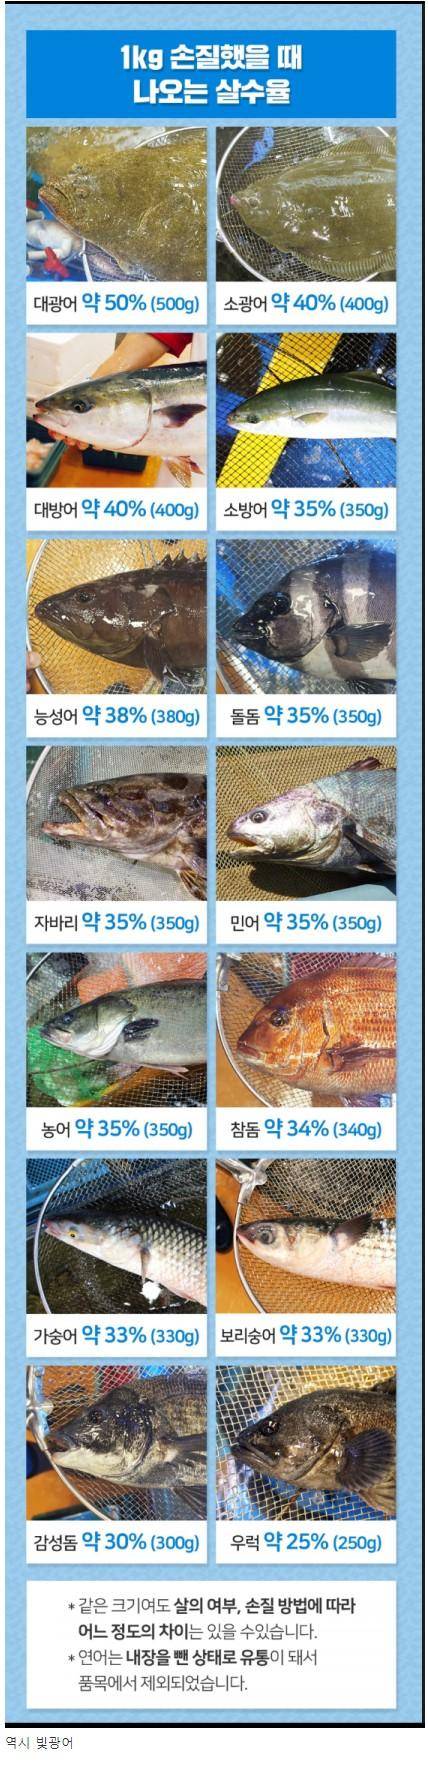 18 생선 별 횟감 손질시 나오는 1kg당 수율.jpg